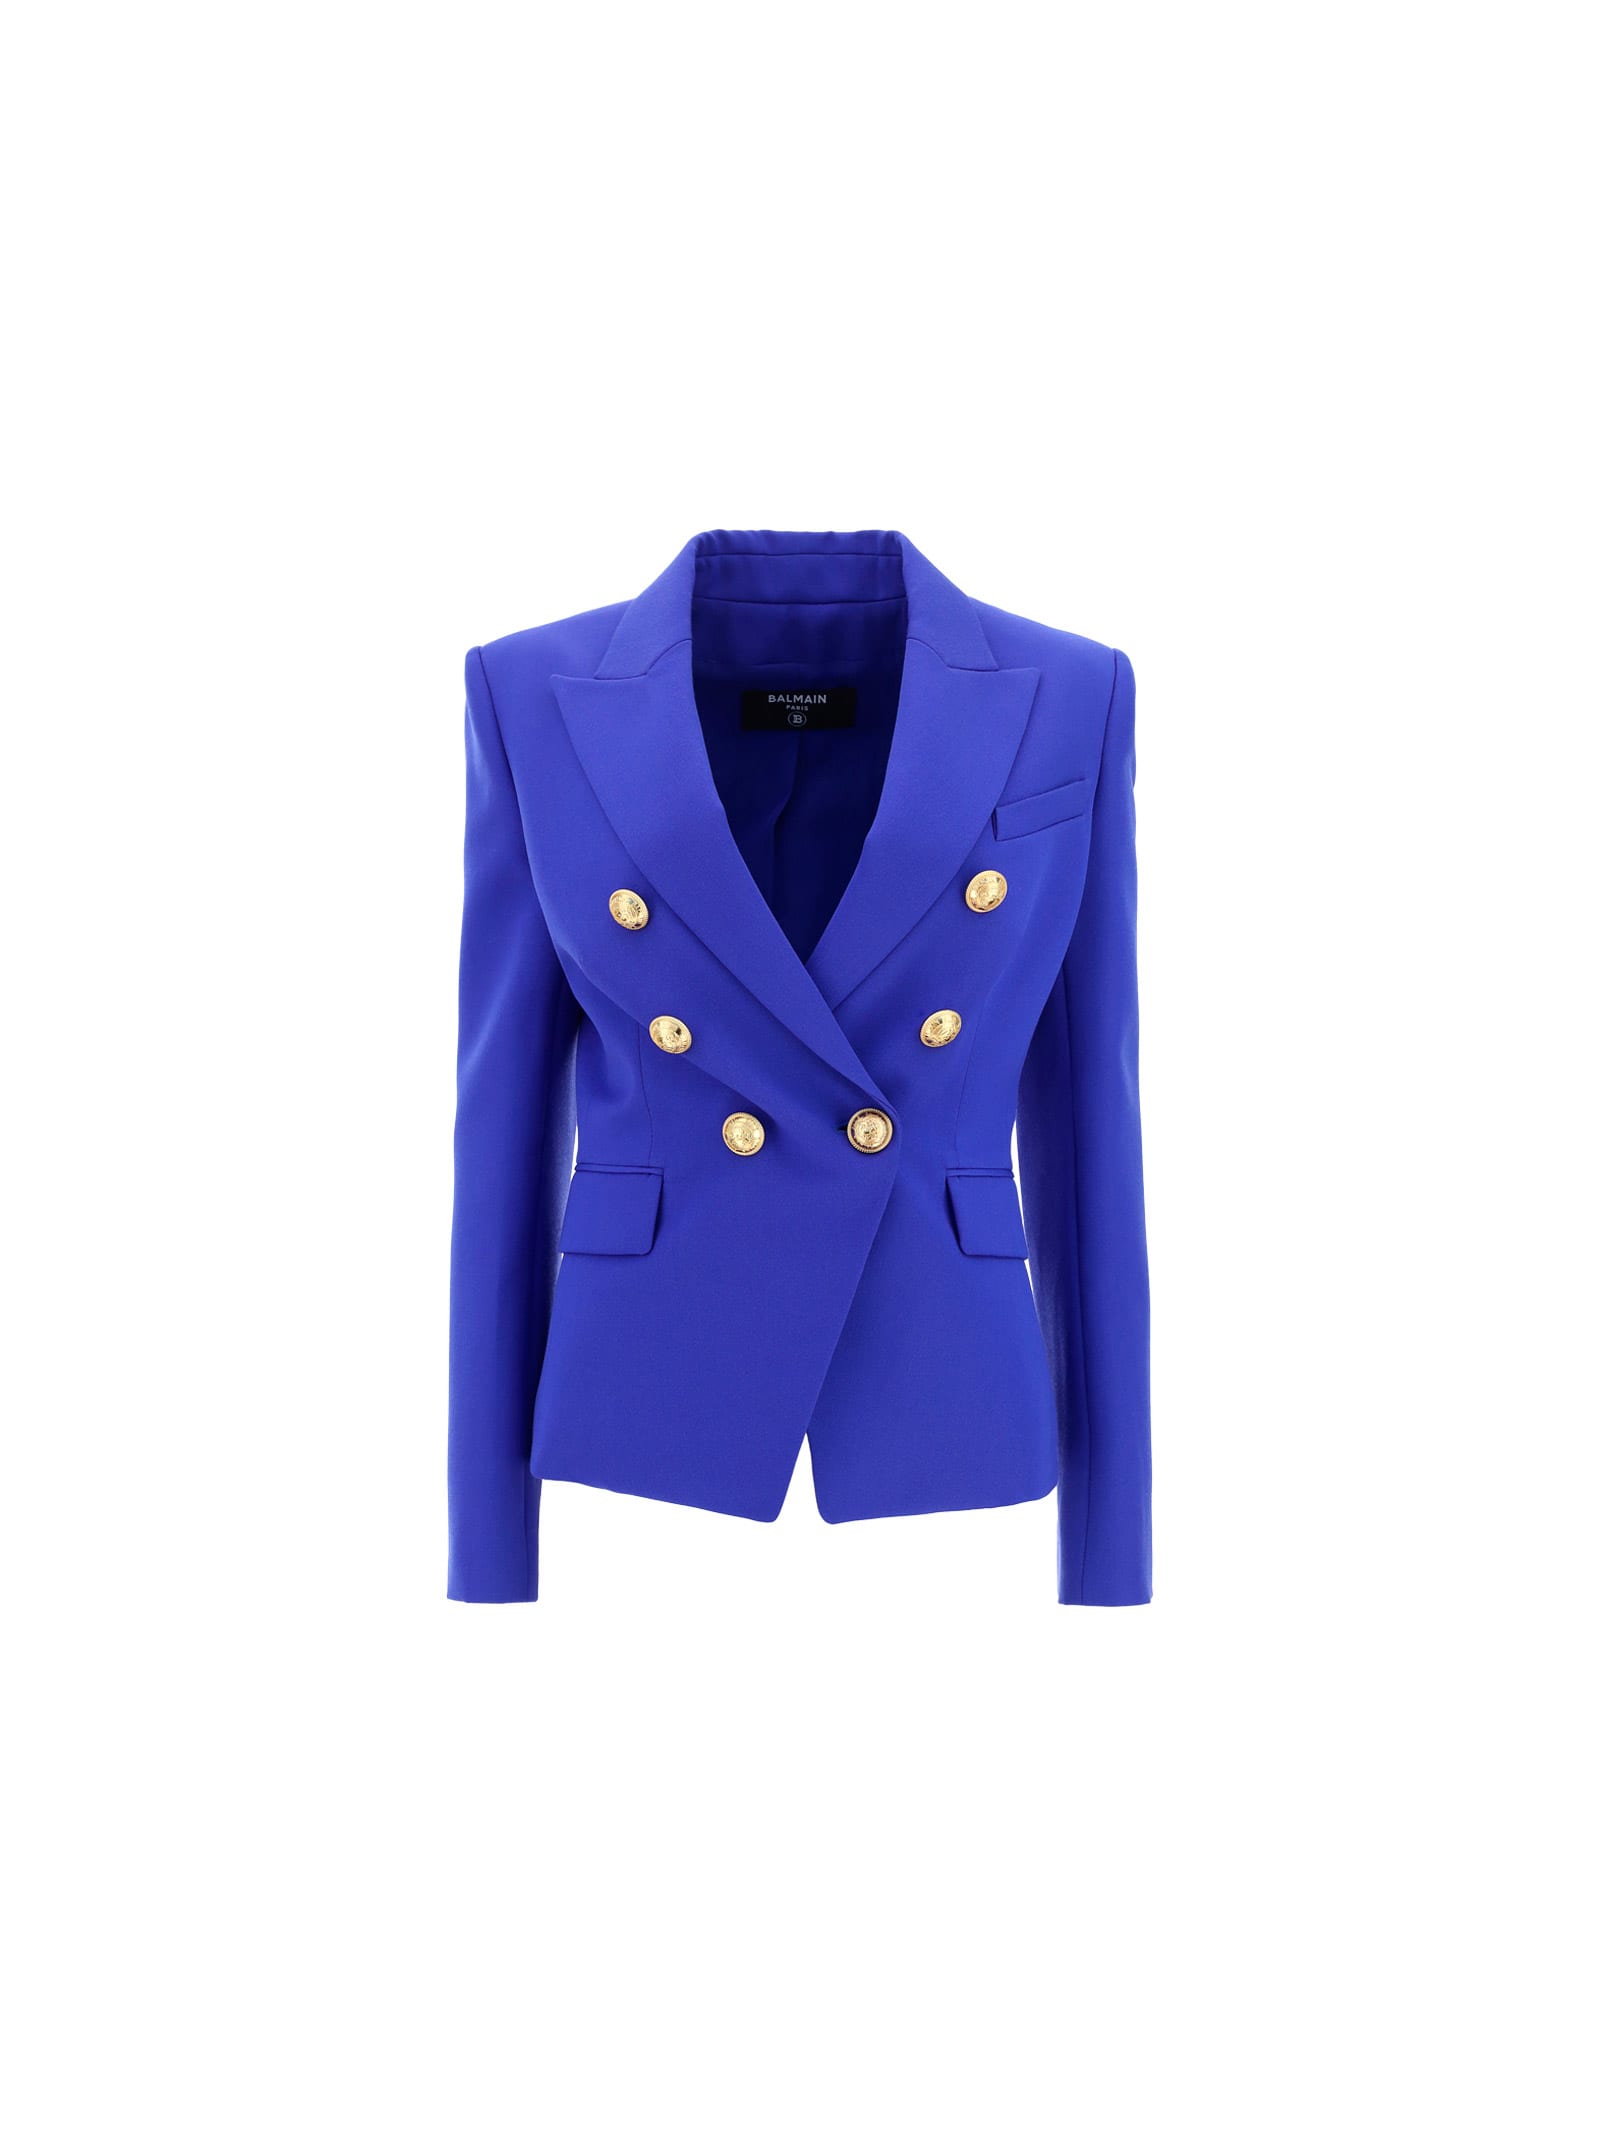 Balmain Jacket In Bleu Gitane